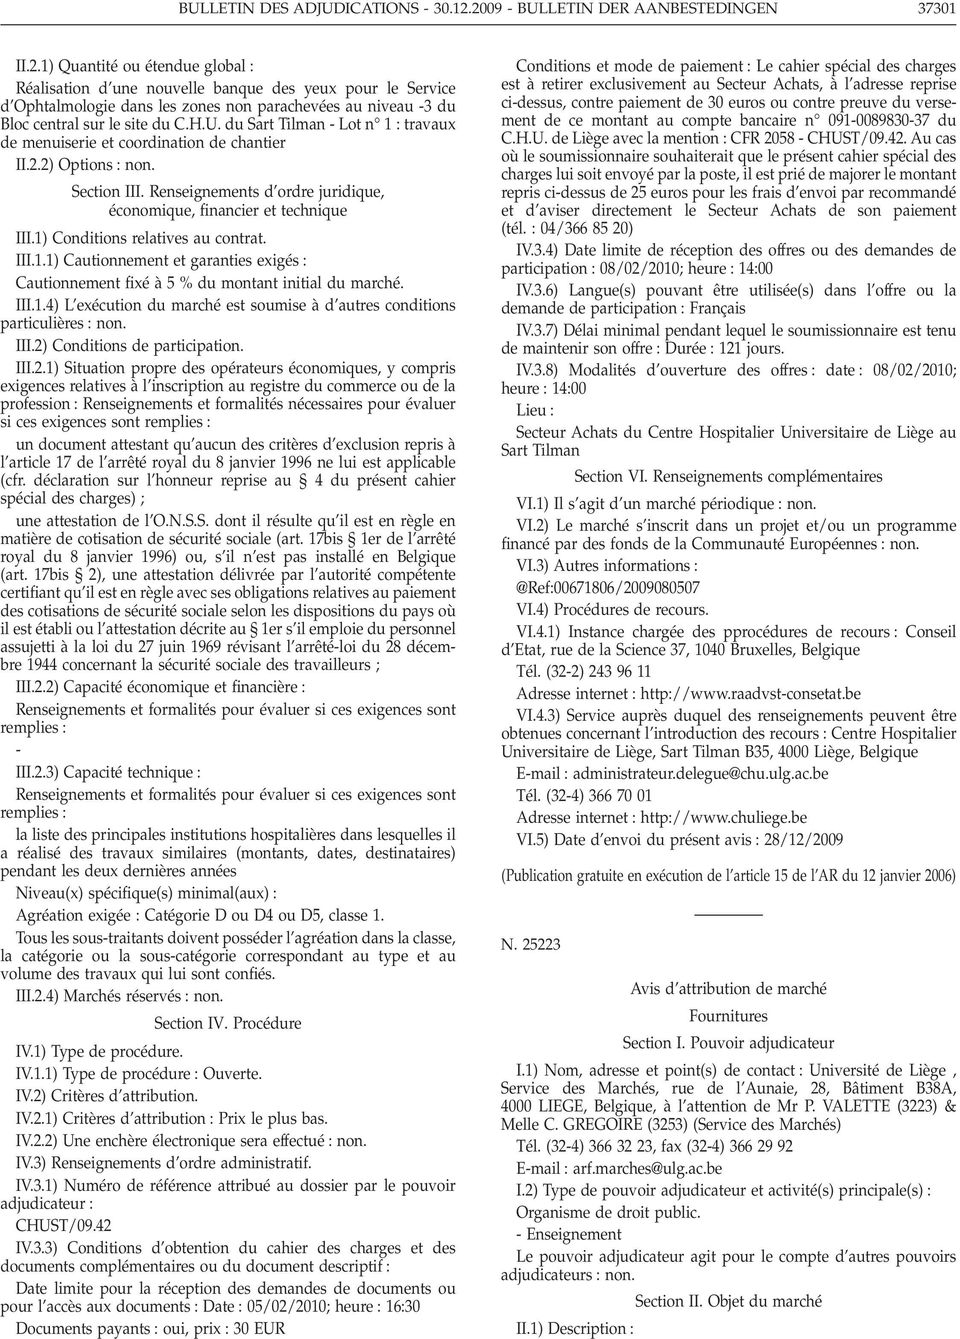 H.U. du Sart Tilman - Lot n 1 : travaux de menuiserie et coordination de chantier II.2.2) Options : non. Section III. Renseignements d ordre juridique, économique, financier et technique III.